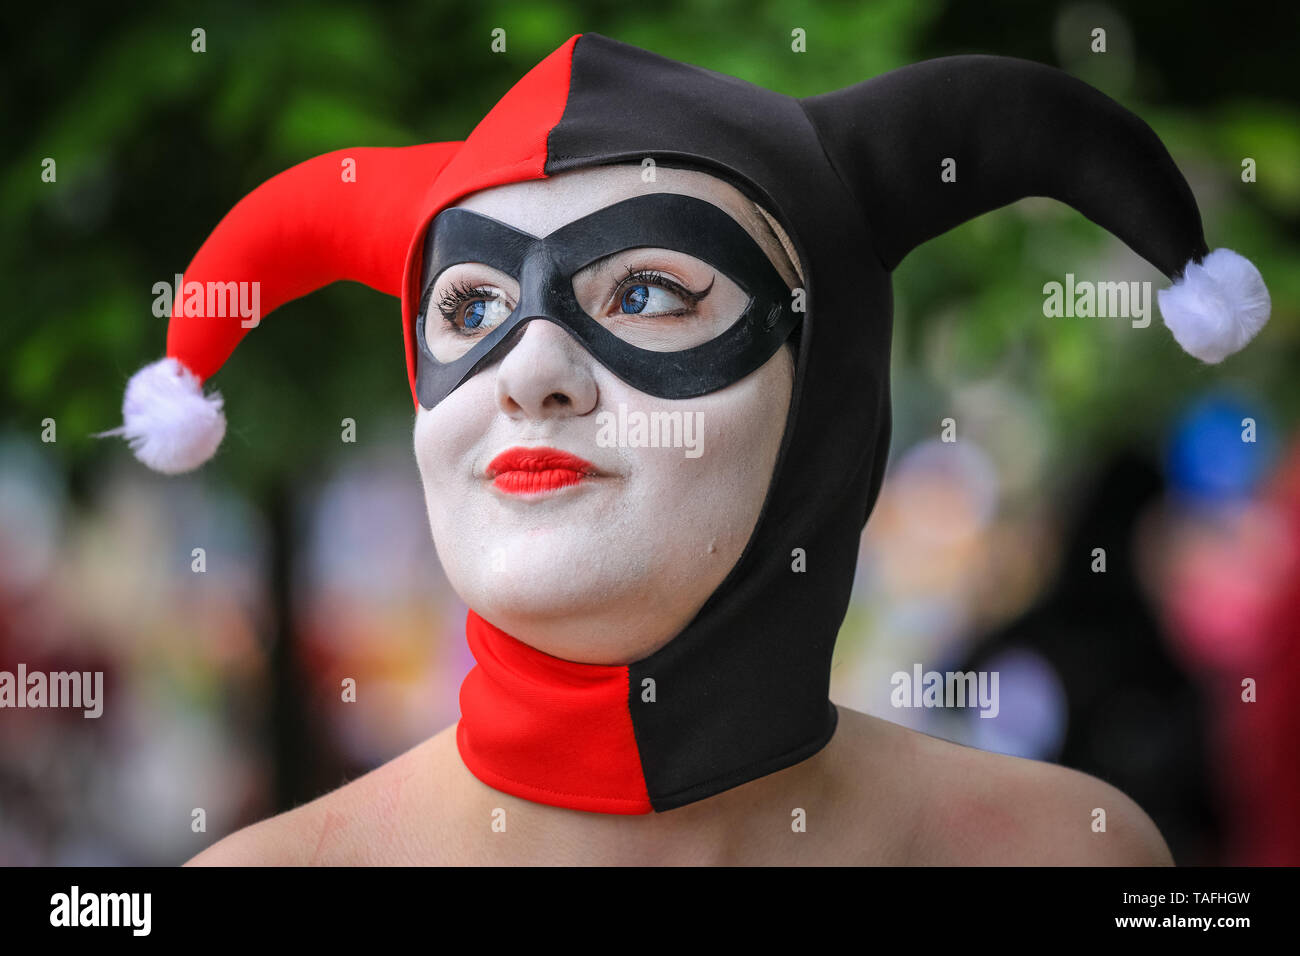 ExCel London, Regno Unito - 24 maggio 2019. Una giovane donna vestita come Harley  Quinn da Batman. Migliaia di cosplayers, i giocatori e gli appassionati di  film e TV fantasy e sci-fi